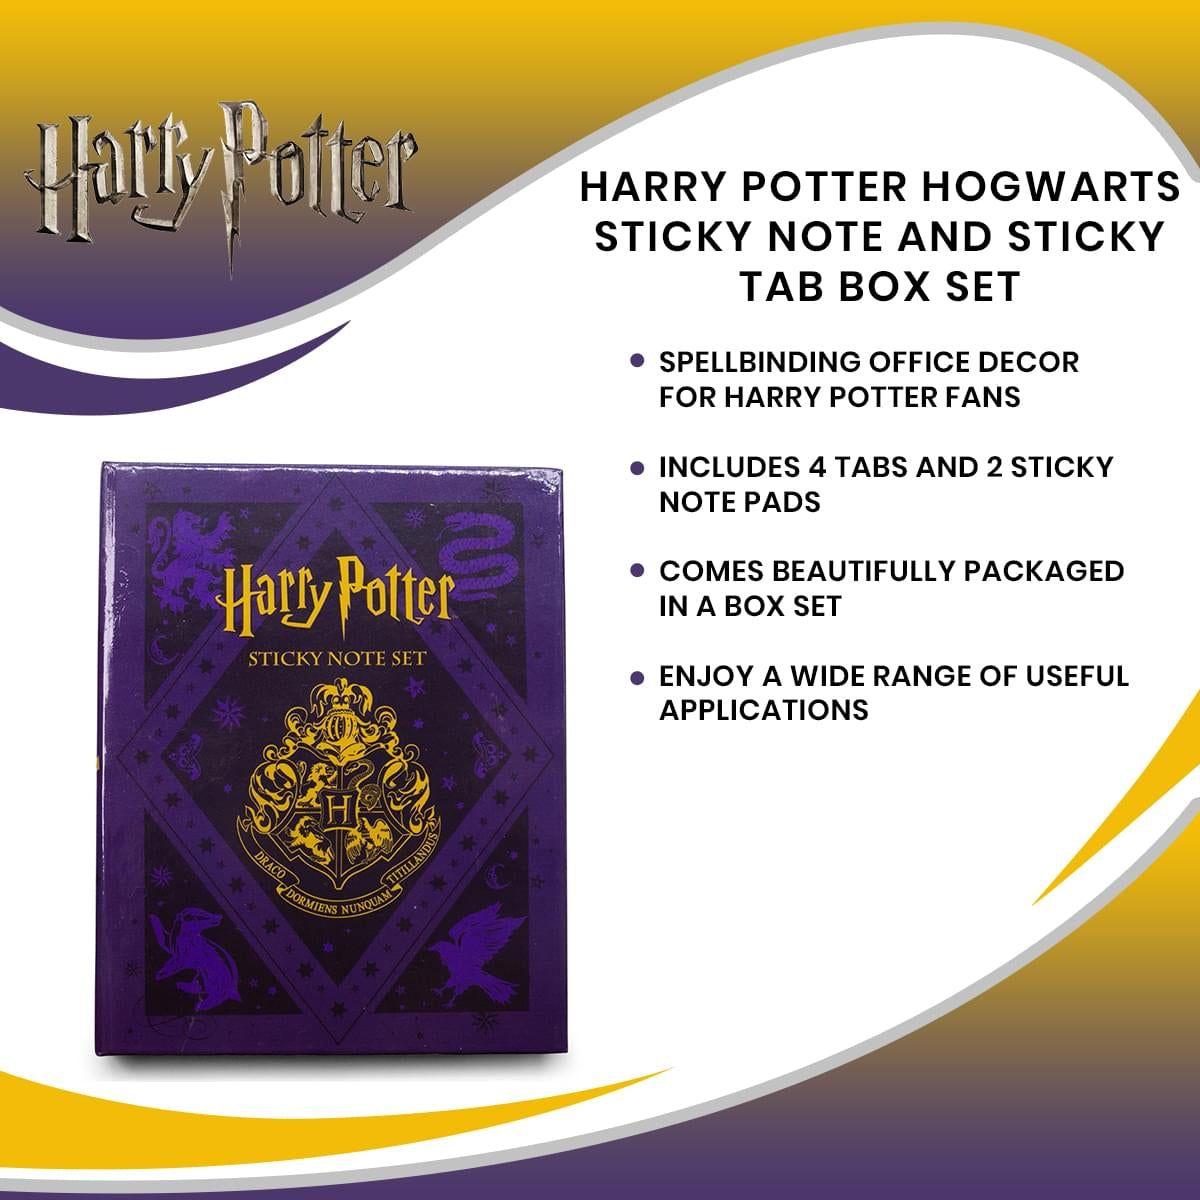 Harry Potter Hogwarts Sticky Note and Sticky Tab Box Set